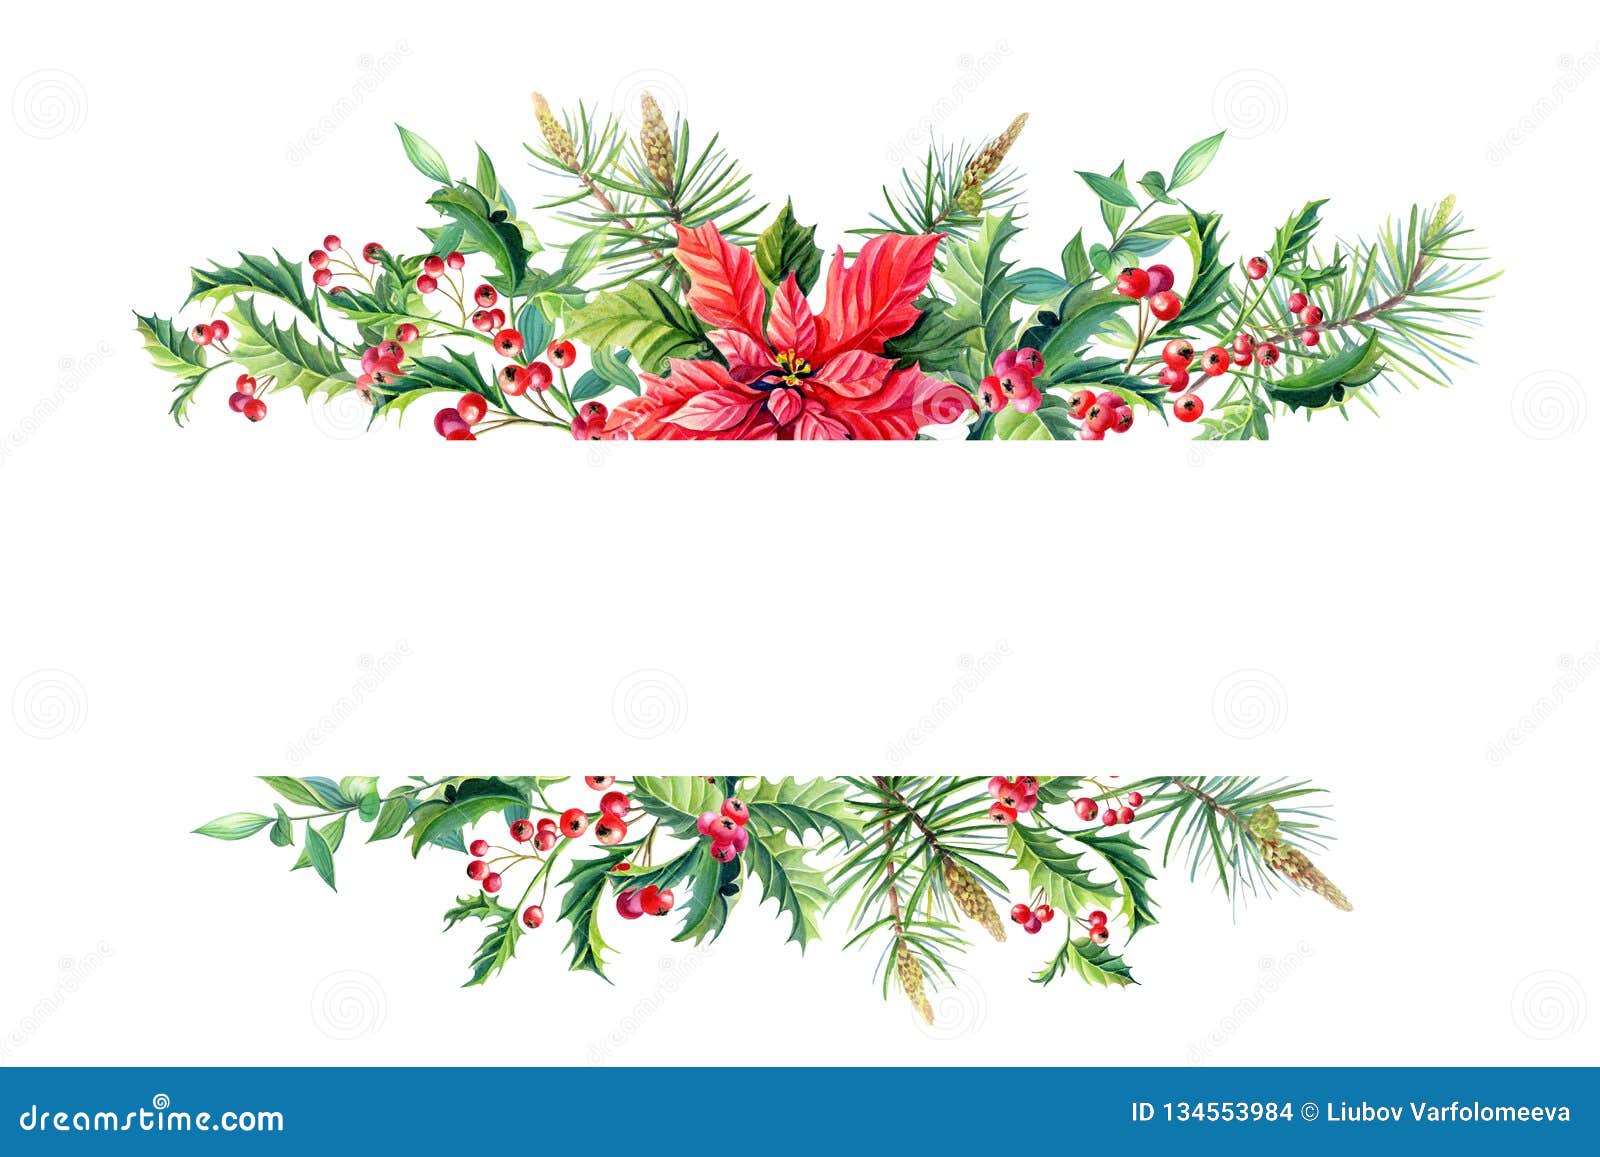 Merry Christmas Poinsettia Plant Garden Banner 3'x2' Flag NO POLE 